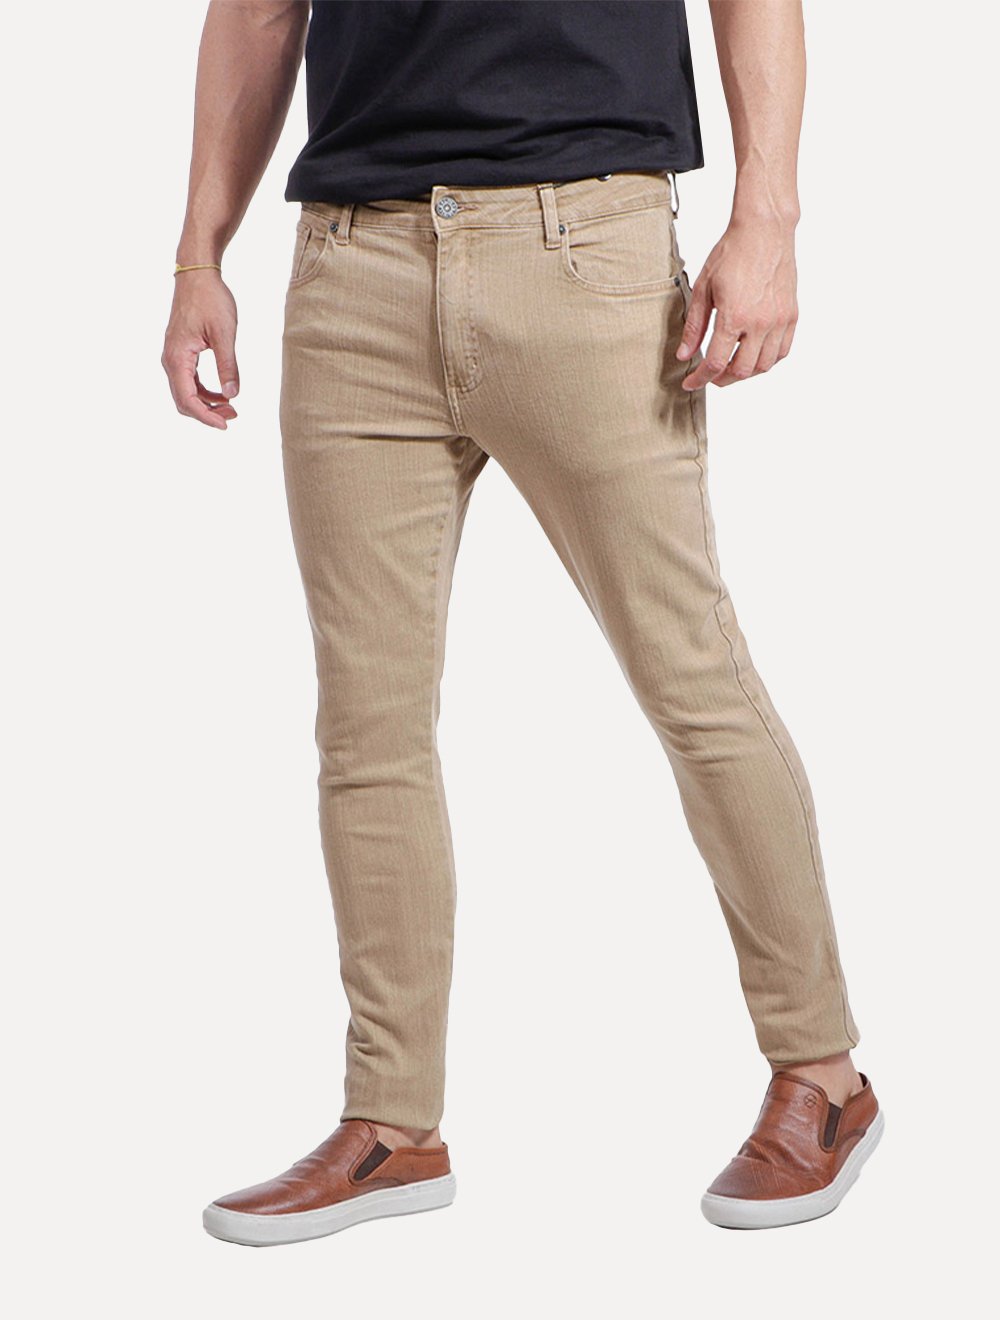 Calça Ralph Lauren Jeans Masculina Slim Stretch Stoned Marrom